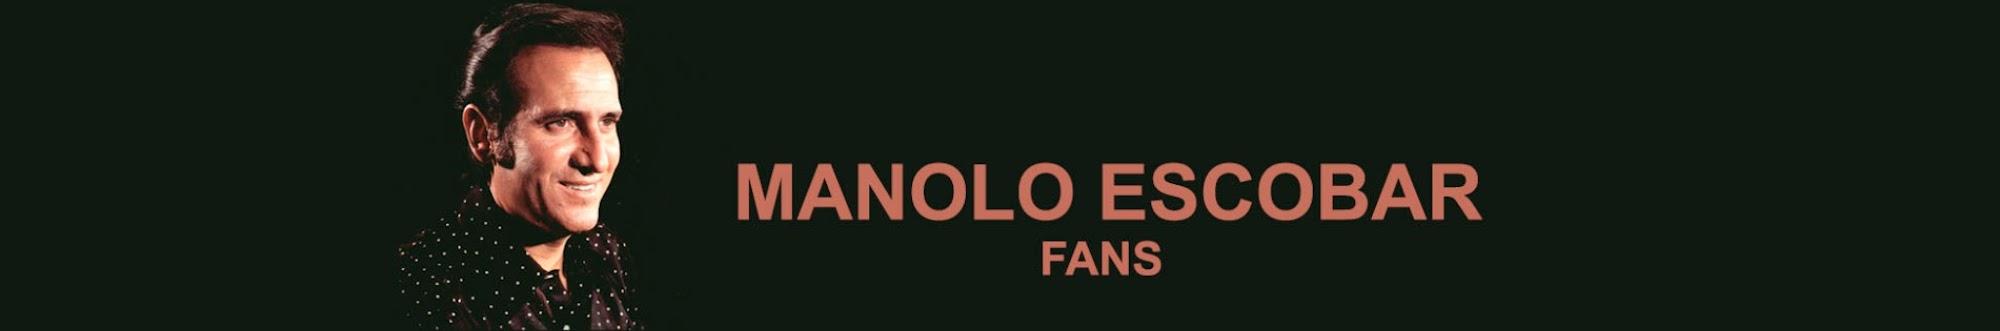 Manolo Escobar Fans